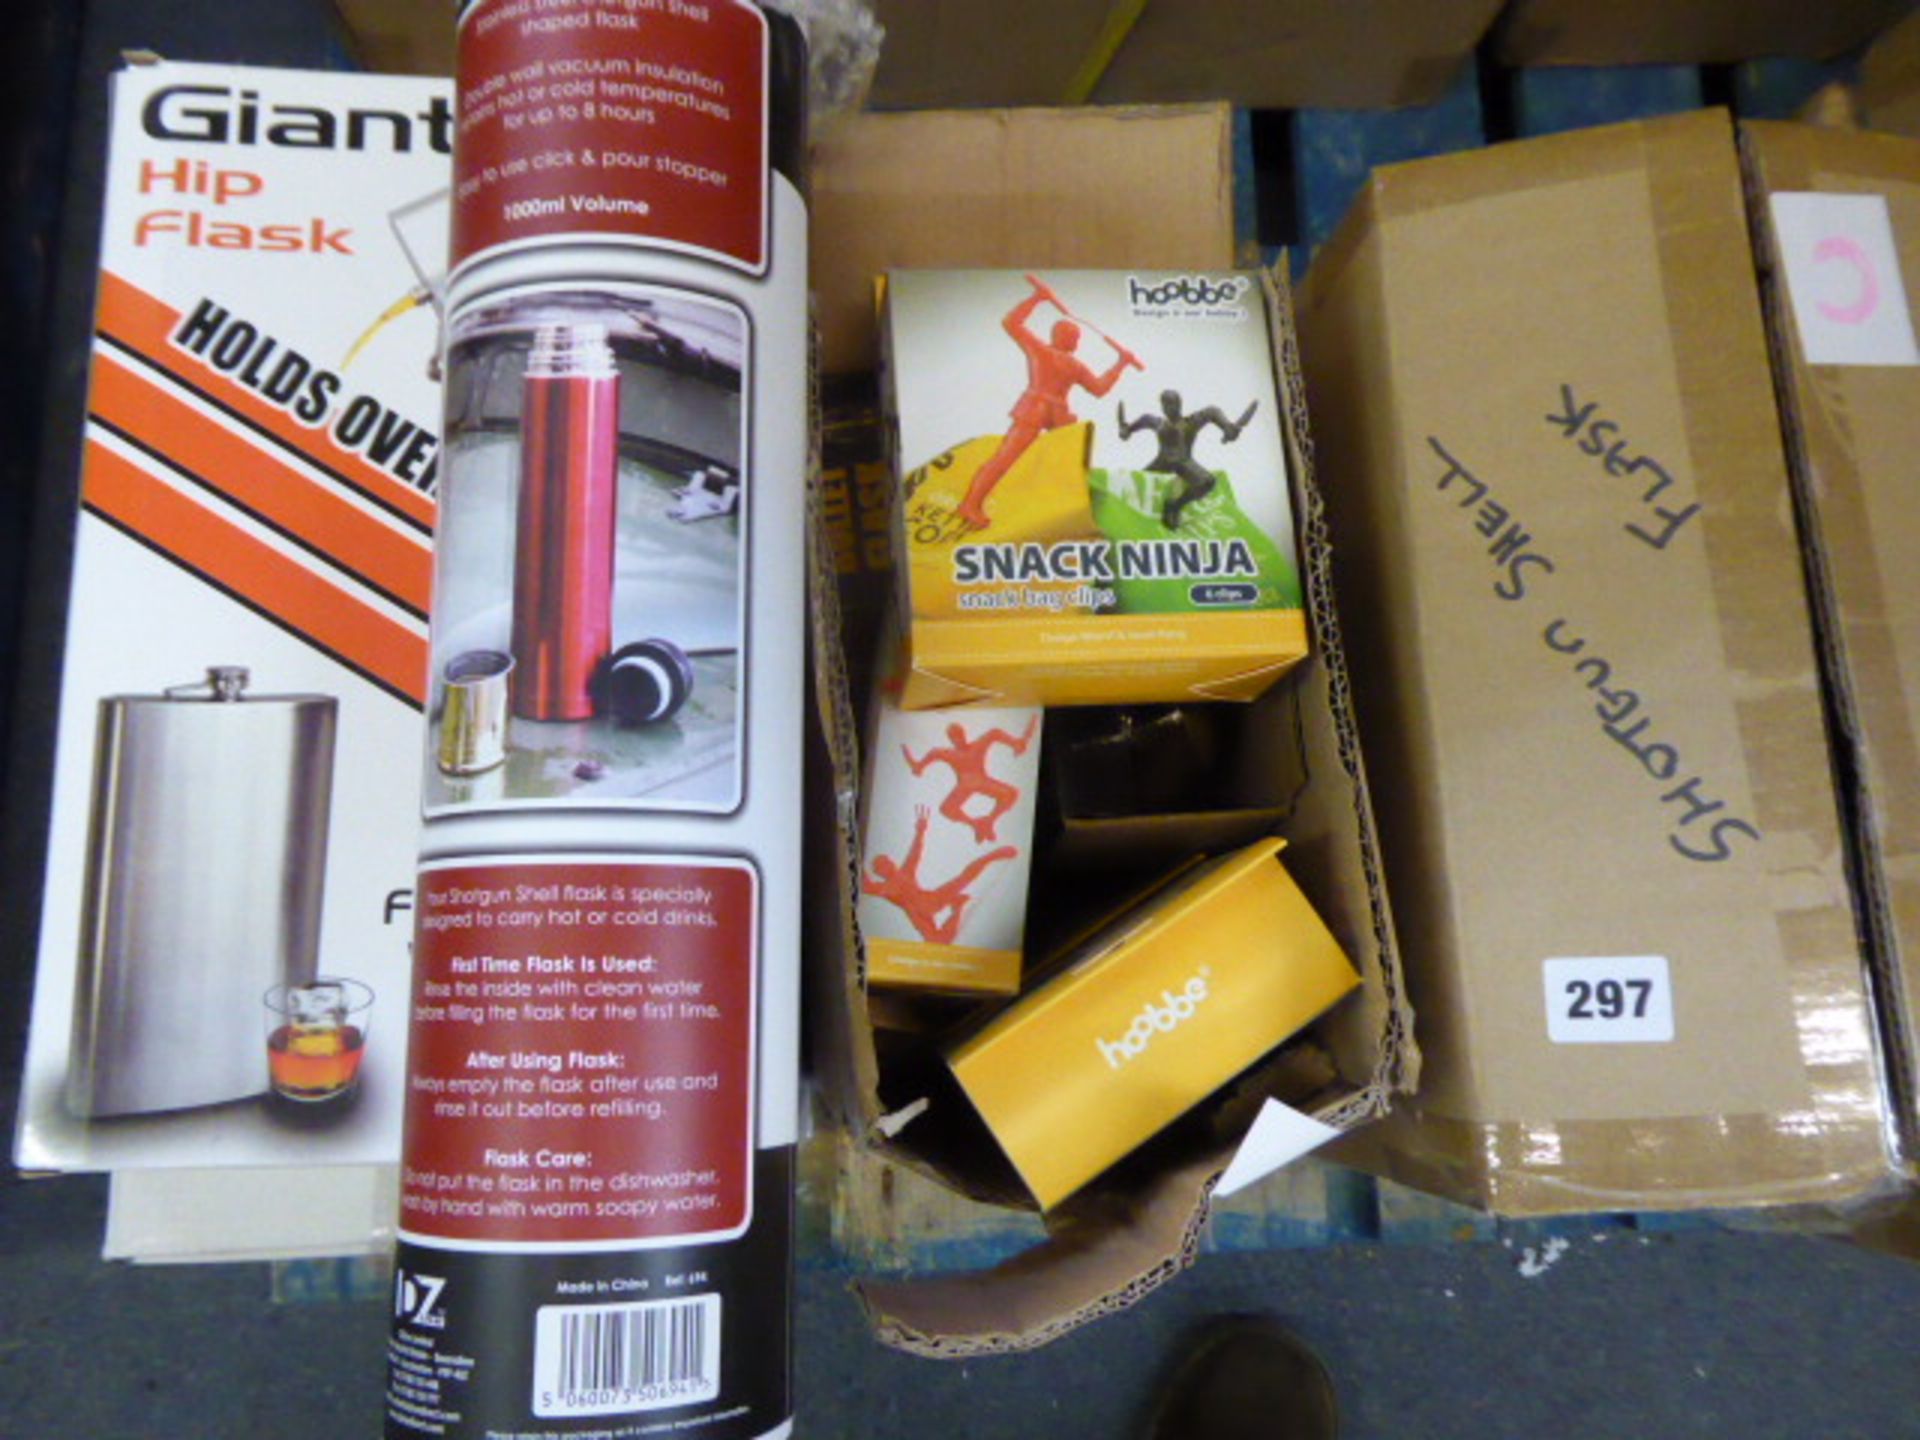 3 boxes of novelty items inc. giant hip flasks, bullet shape flasks, ninja snap bag clips - Image 2 of 2